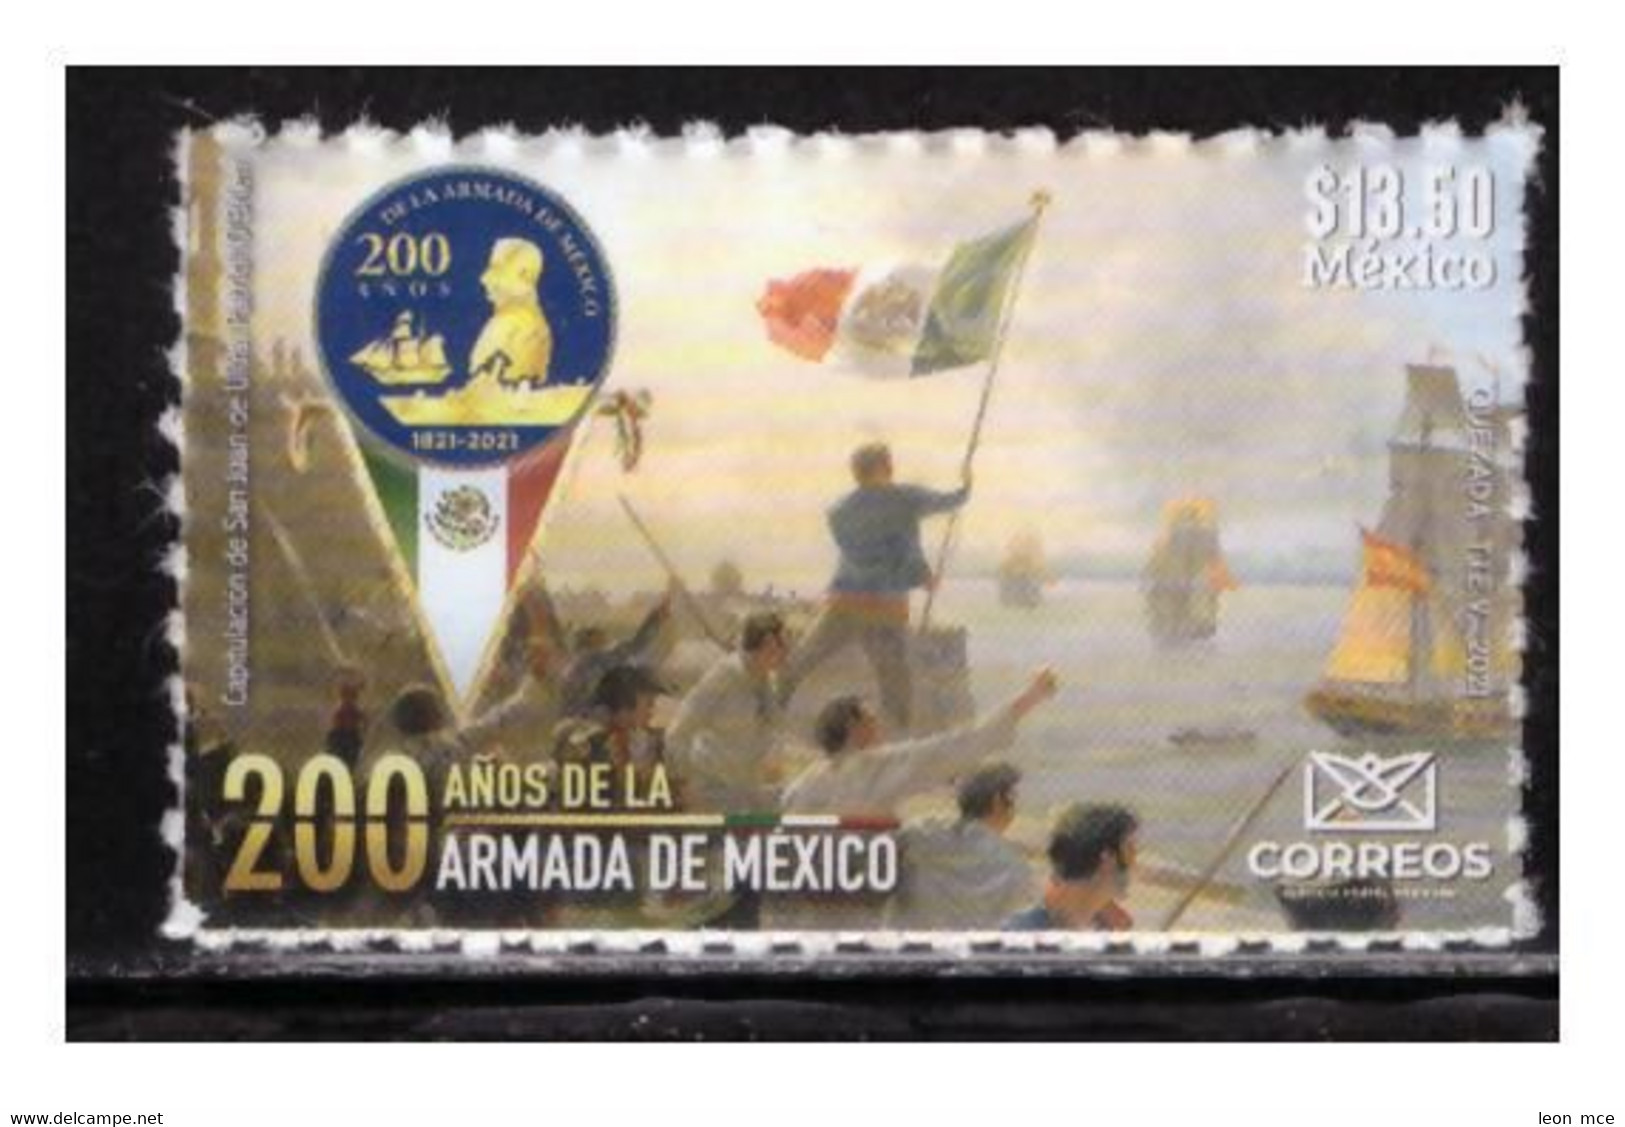 2021 MÉXICO 200 Años De La Armada De México MNH 200 Years Of The Mexican Navy  SELF-ADHERIBLE SEAL, FLAG, BOATS - México